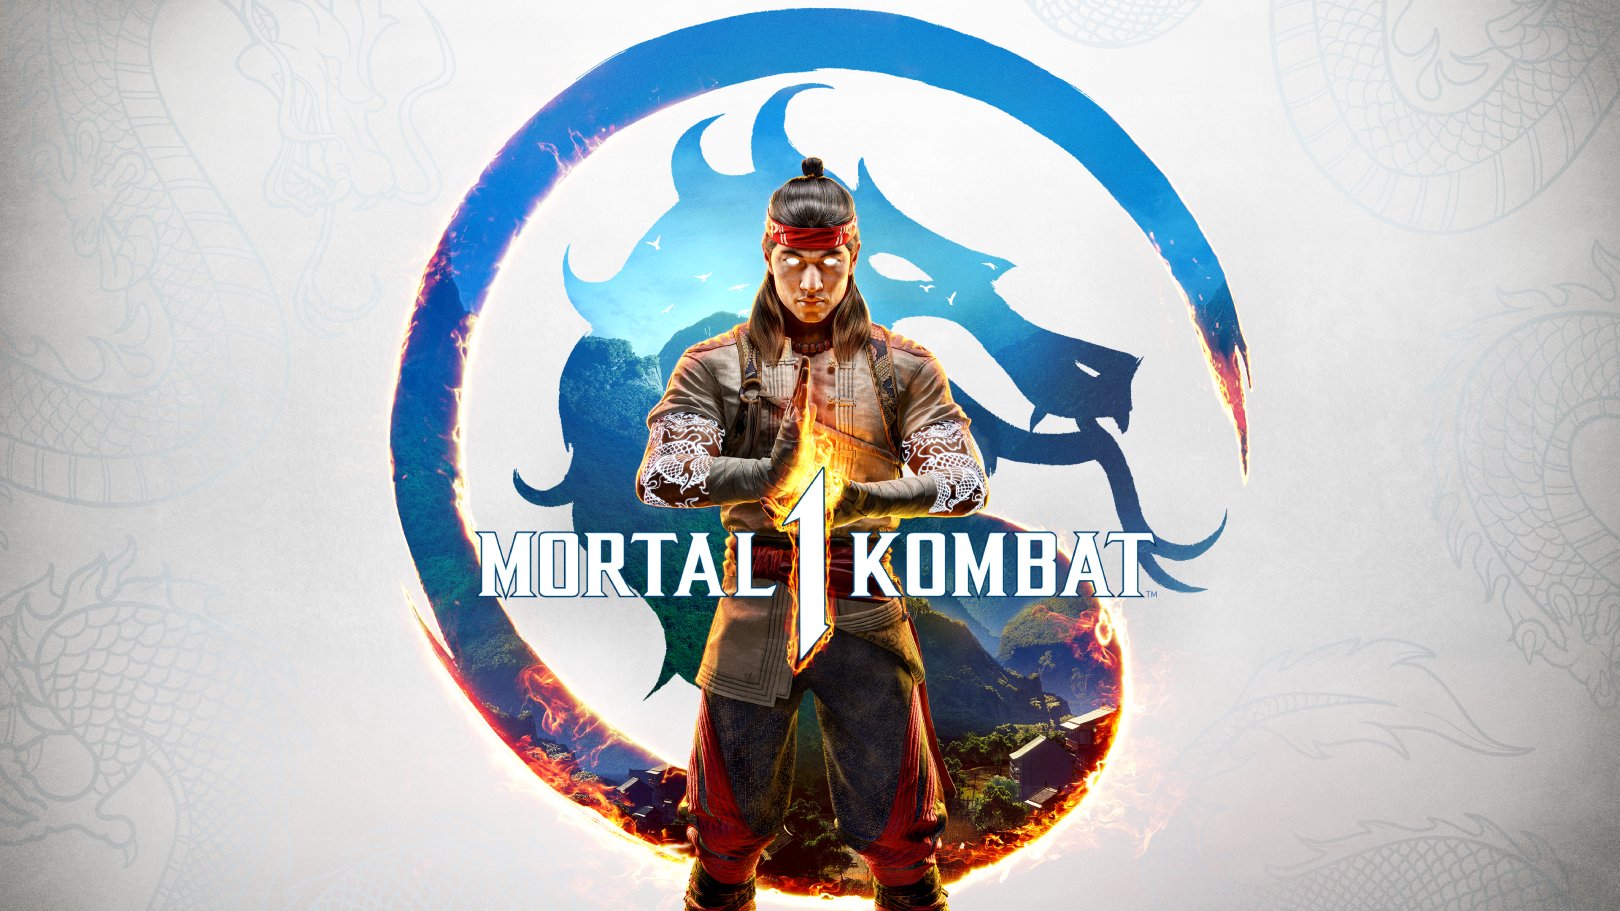 Mortal Kombat 1 es un juego de lucha publicado por Warner Bros. Games